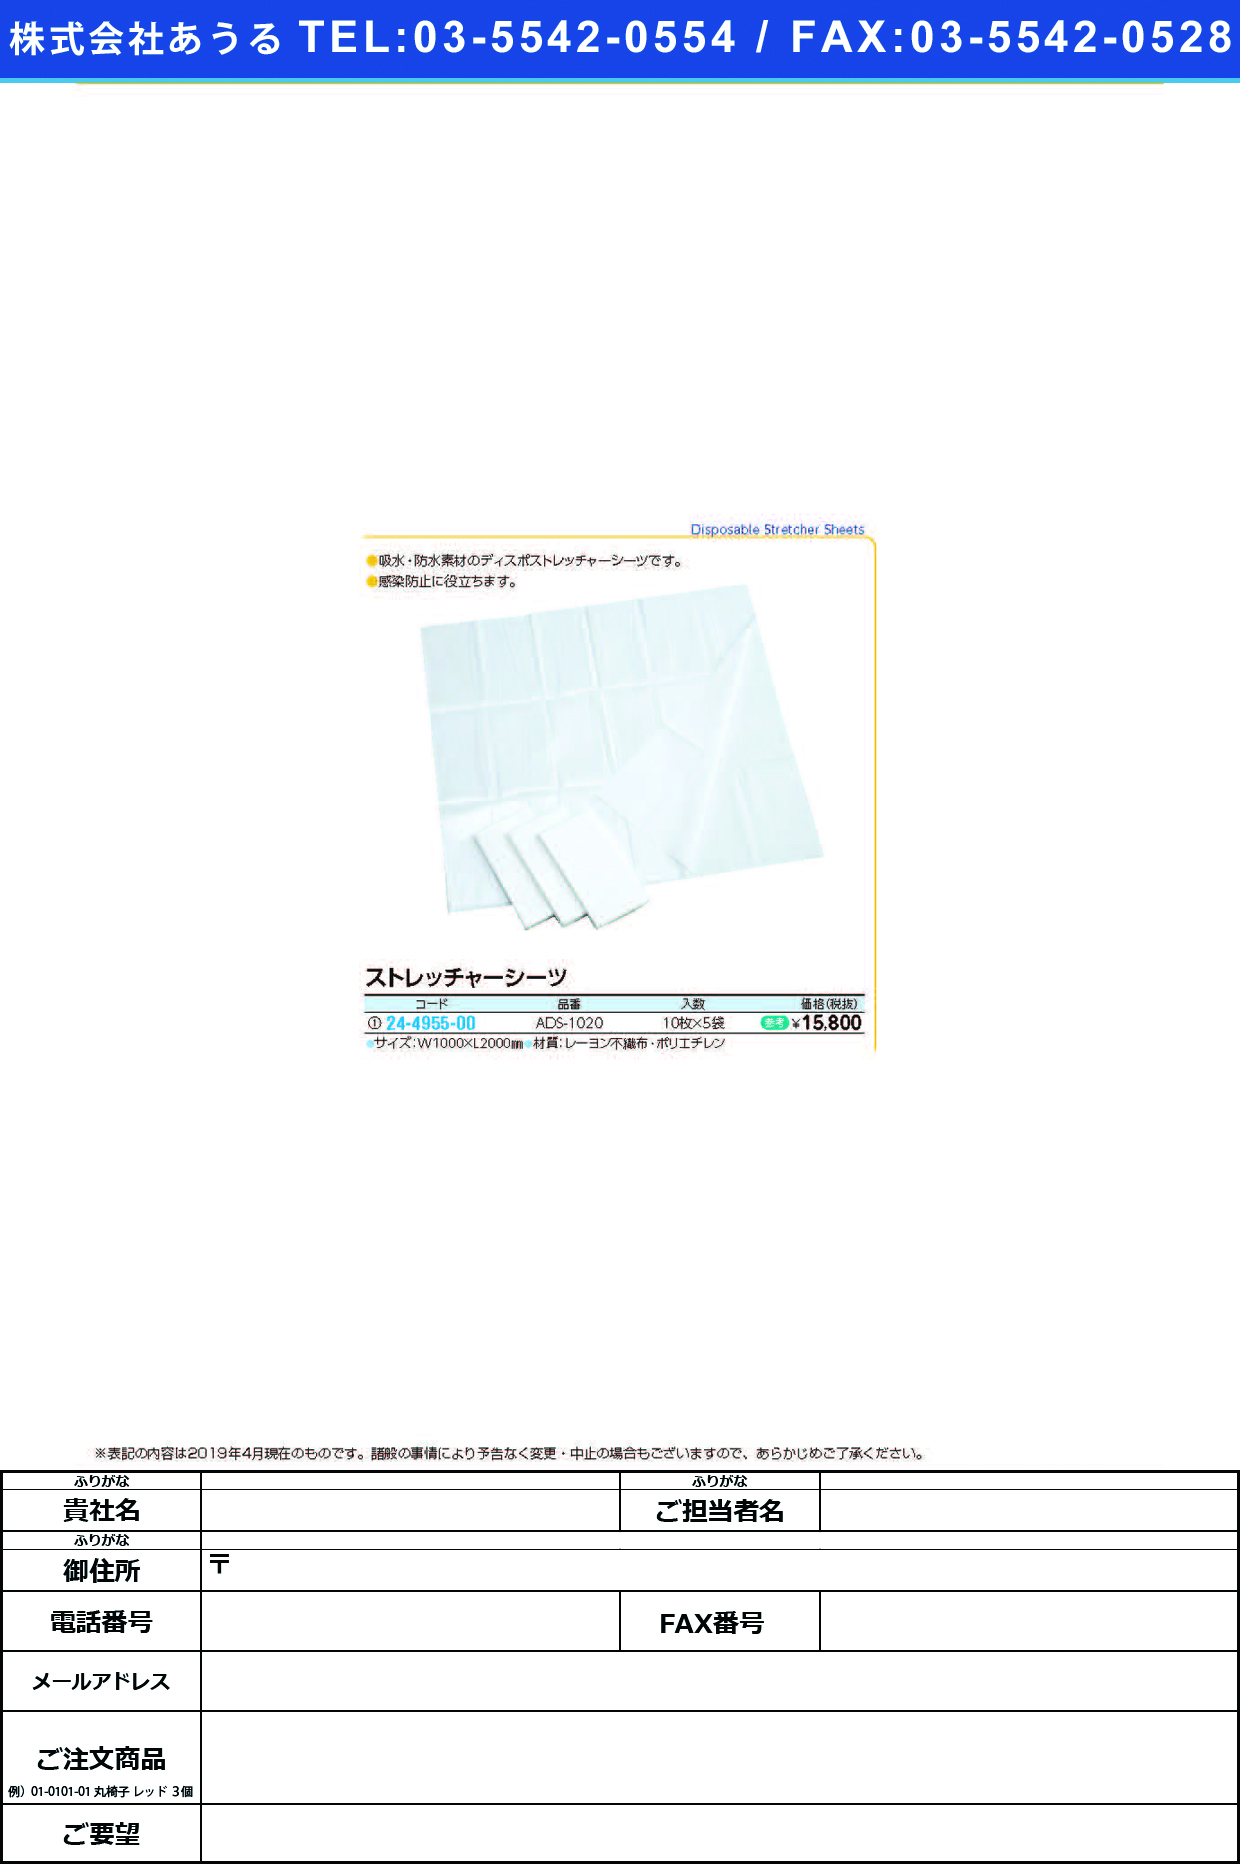 (24-4955-00)ストレッチャーシーツ ASS-1020(10ﾏｲX5ﾌｸﾛ) ｽﾄﾚｯﾁｬｰｼｰﾂ【1箱単位】【2019年カタログ商品】